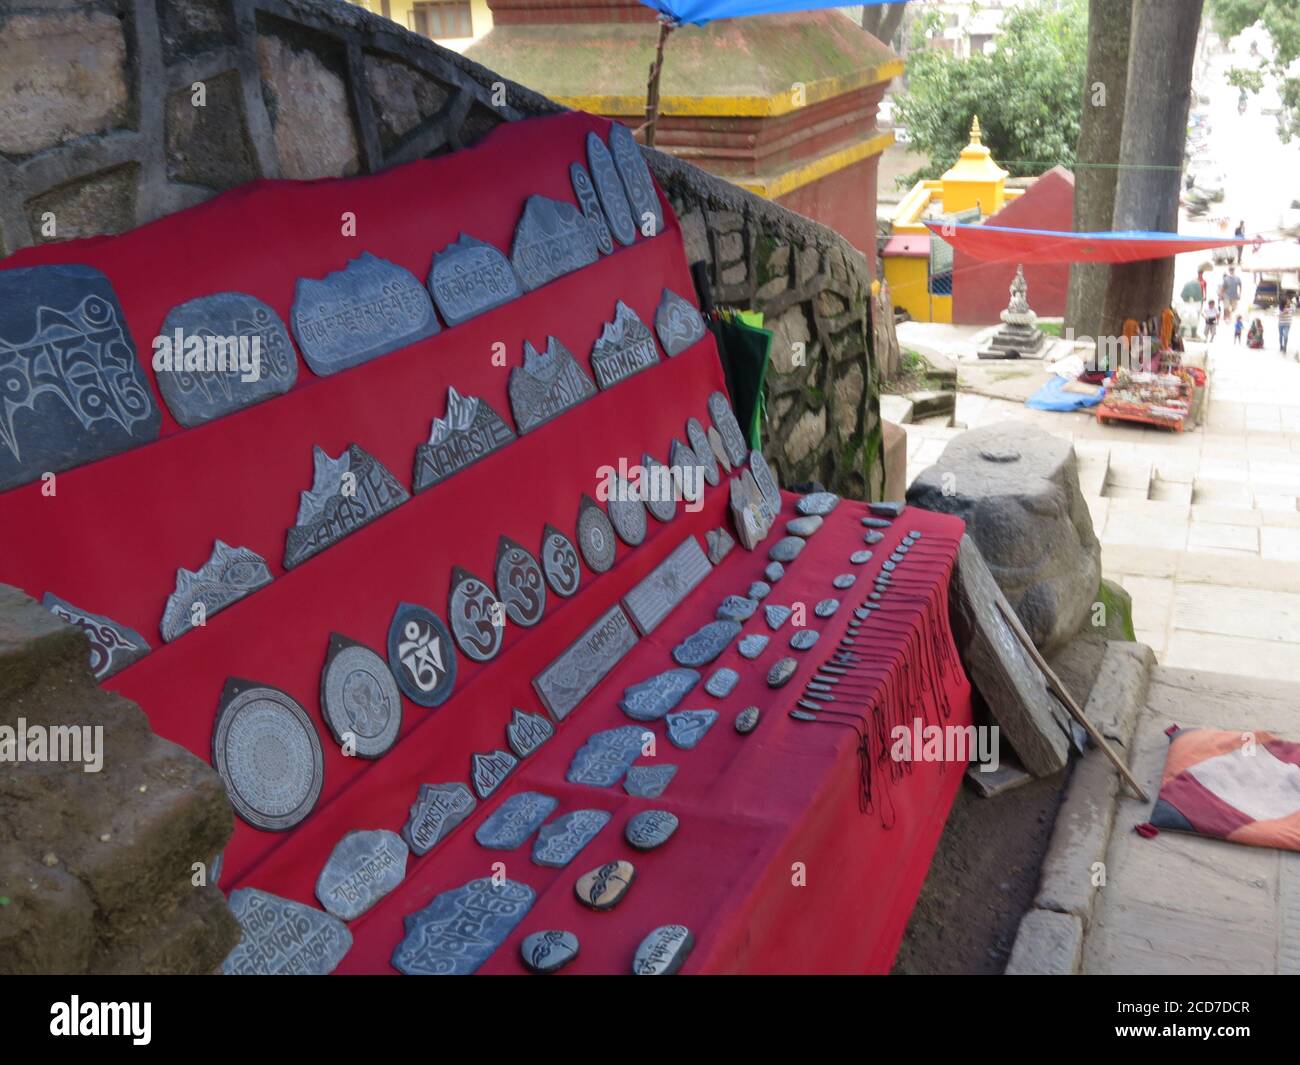 Una pietra di preghiera scolpita con mantra tibetani mostra nel mantello rosso per la vendita nella strada di Kathmandu, Nepal. Foto Stock